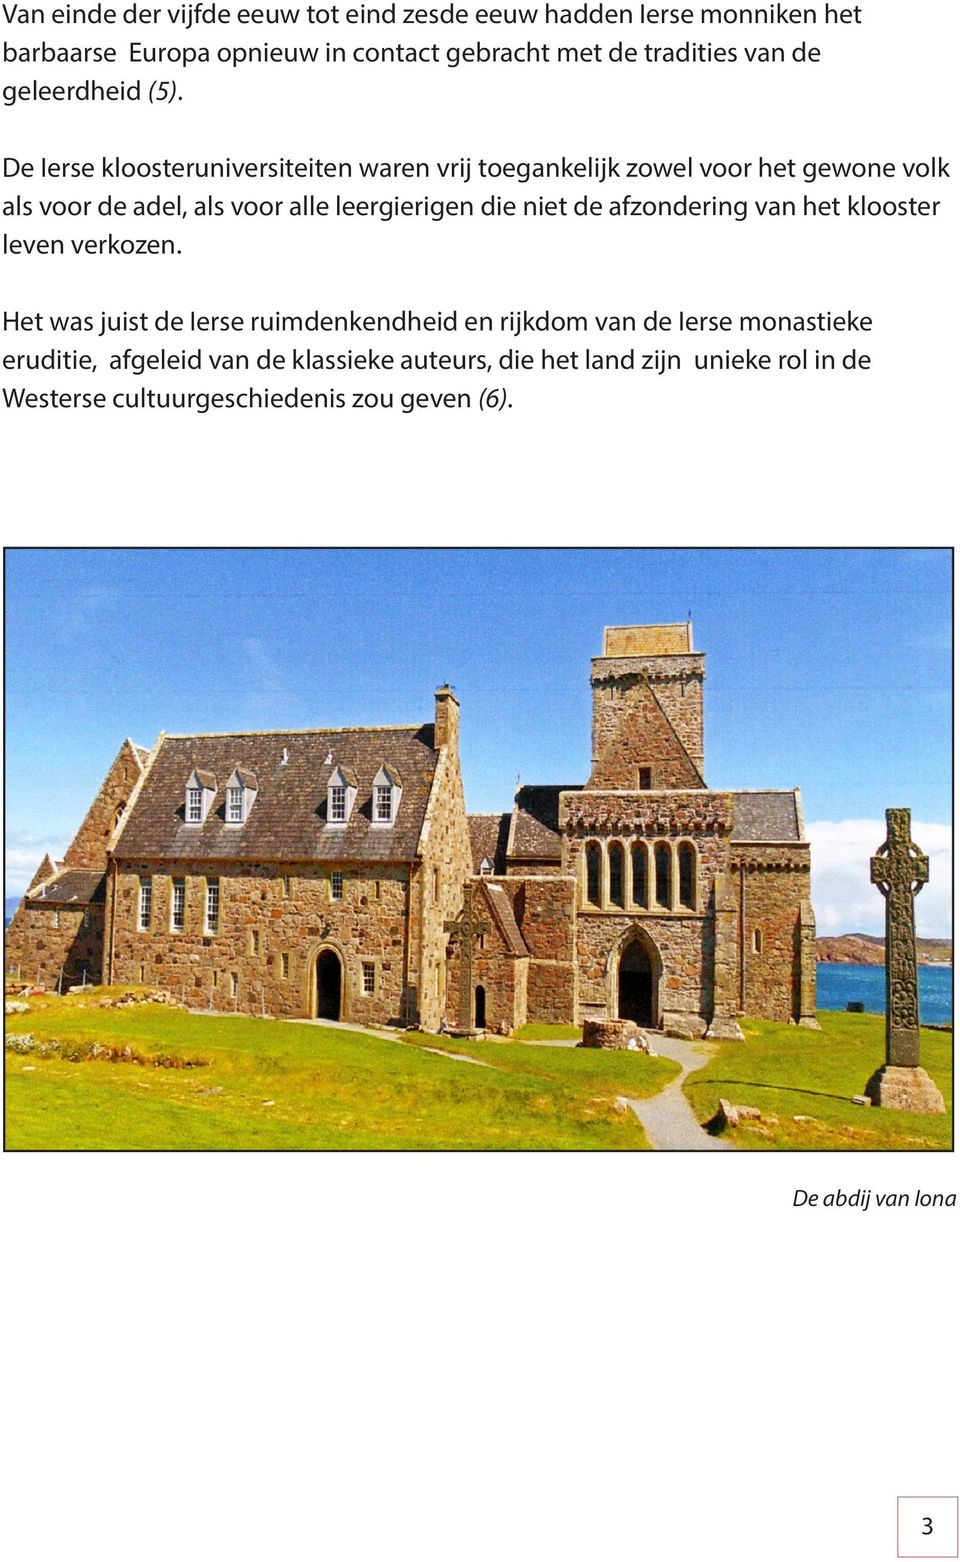 De Ierse kloosteruniversiteiten waren vrij toegankelijk zowel voor het gewone volk als voor de adel, als voor alle leergierigen die niet de